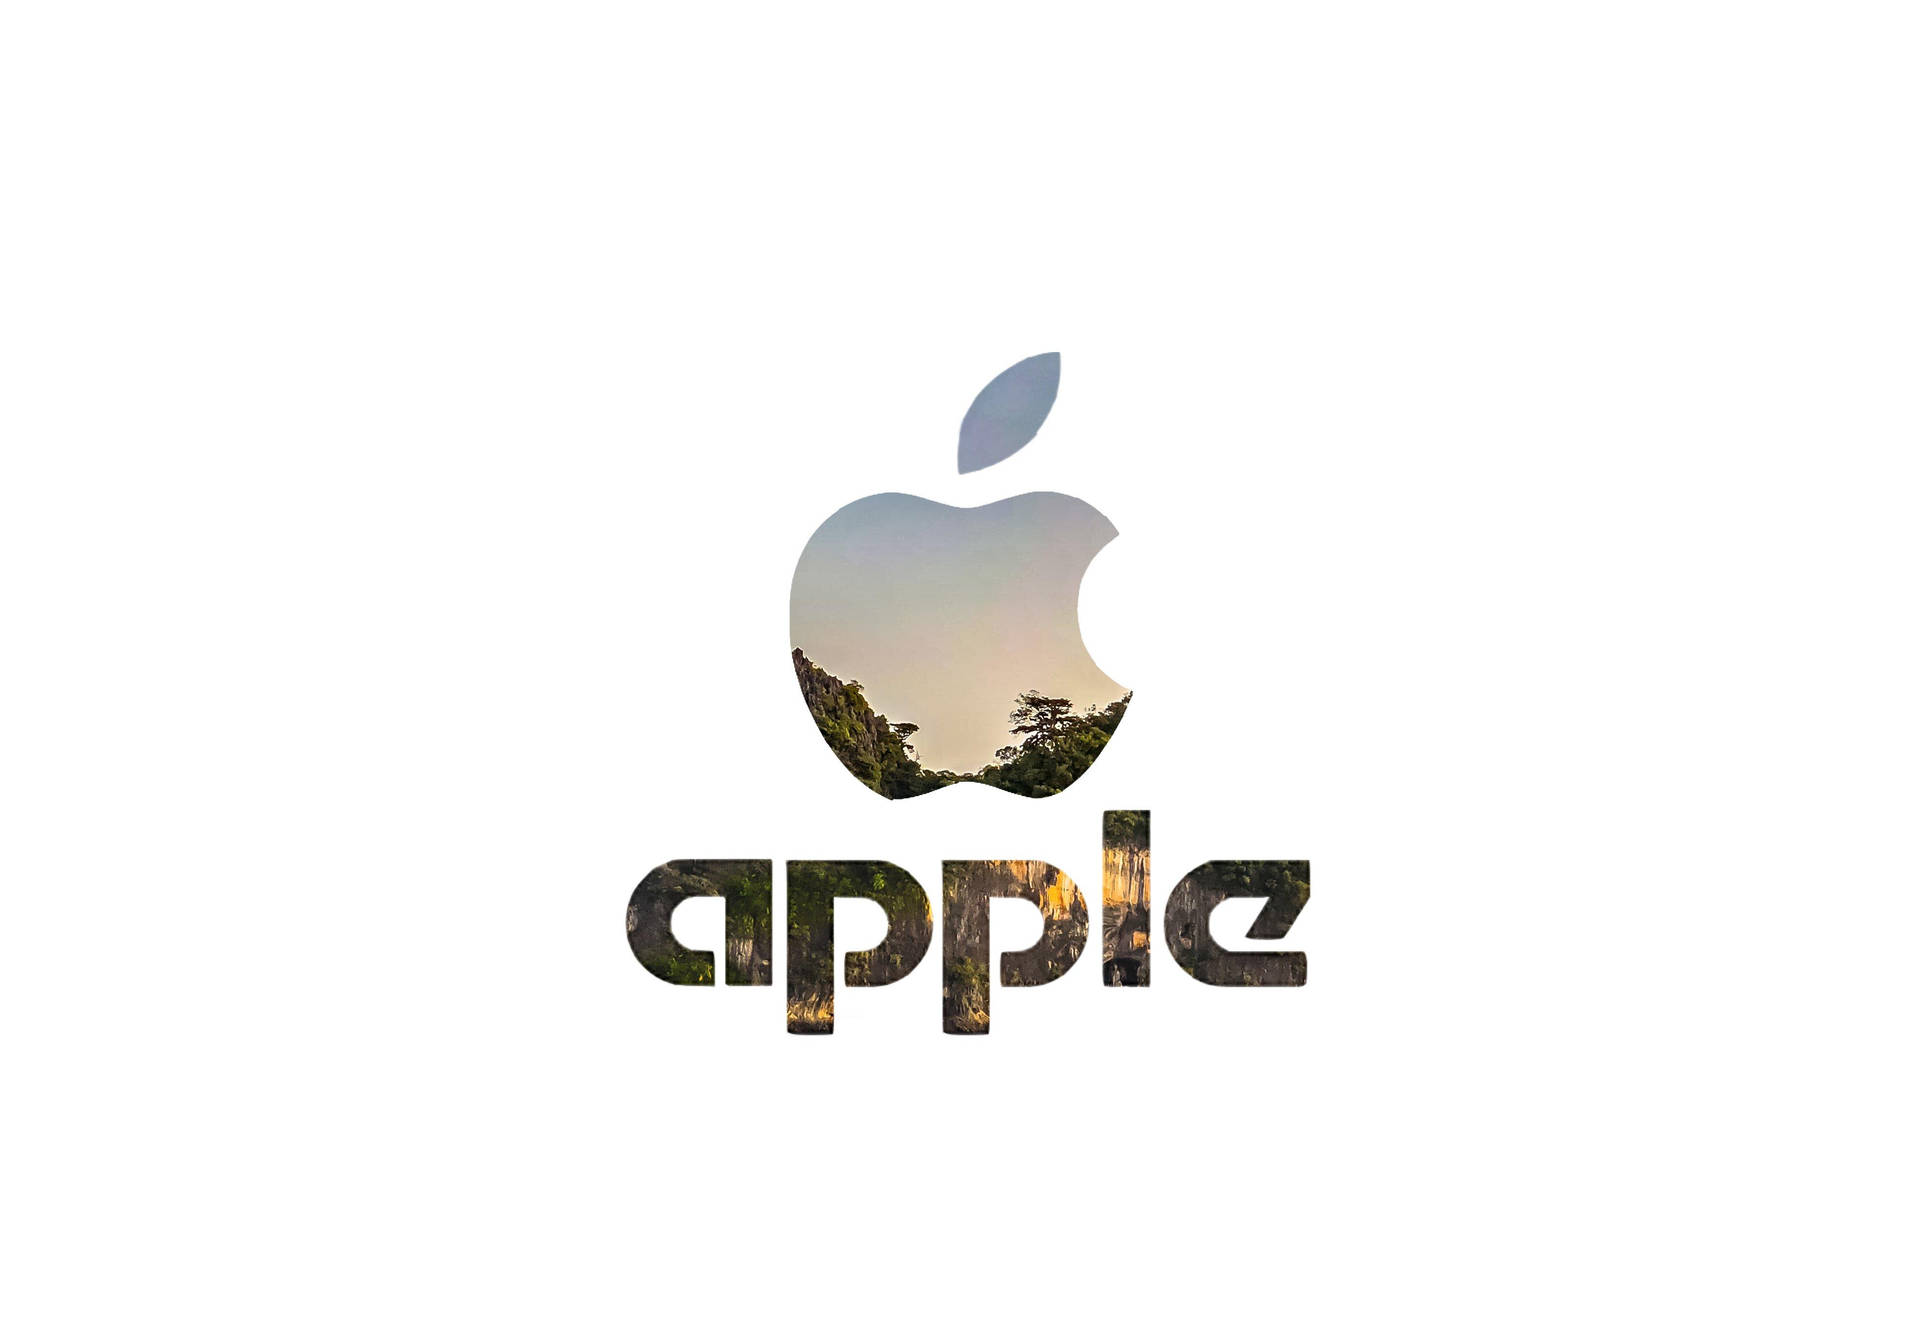 Apple Logo 4k Wallpaper